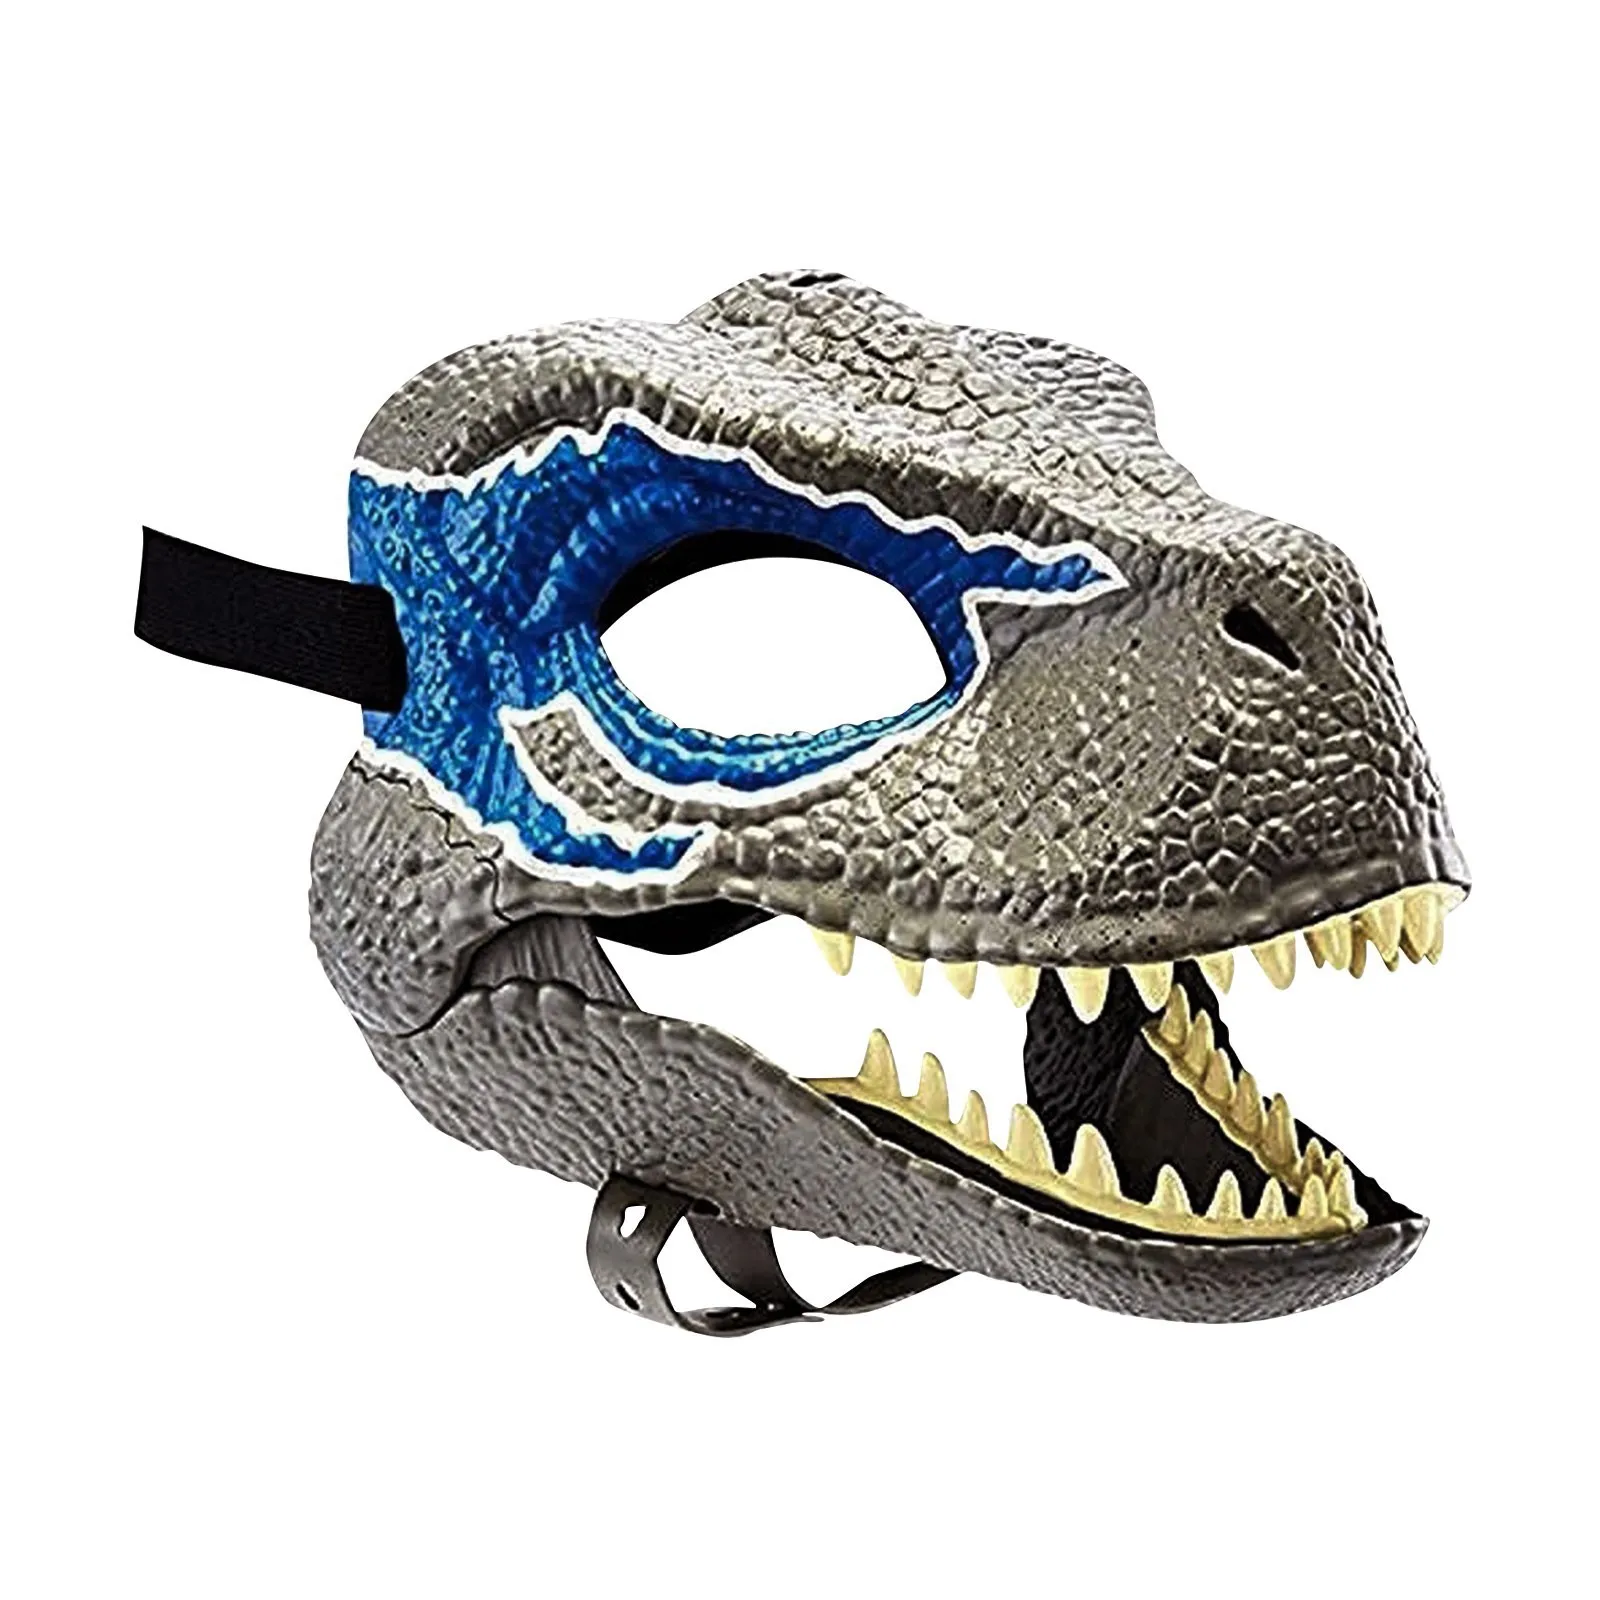 

Маска дракона динозавра на Хэллоуин, змея, открытый рот, латексный ужас, головной убор динозавра, Хэллоуин, вечеринка, косплей, костюм, маска ...